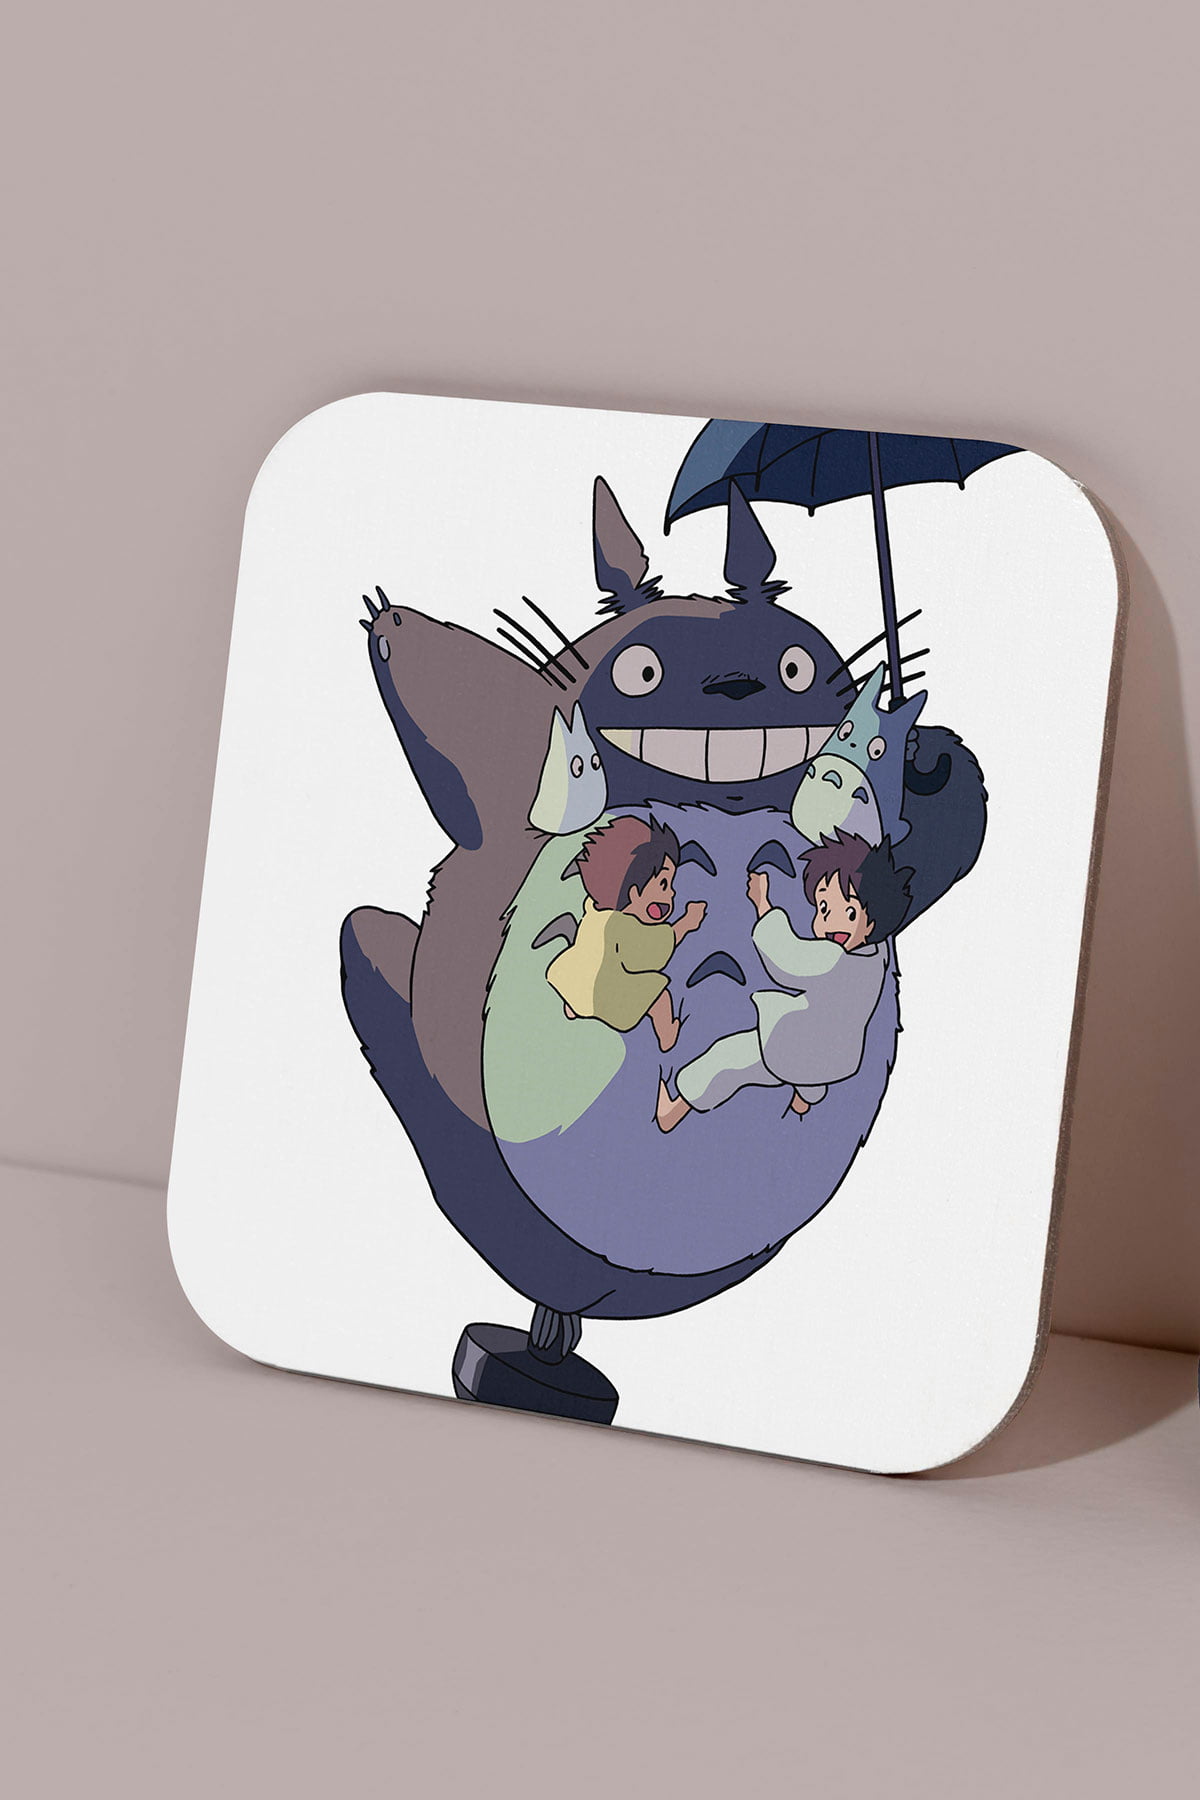 Totoro bardak altligi 10 - totoro bardak altlığı - figurex